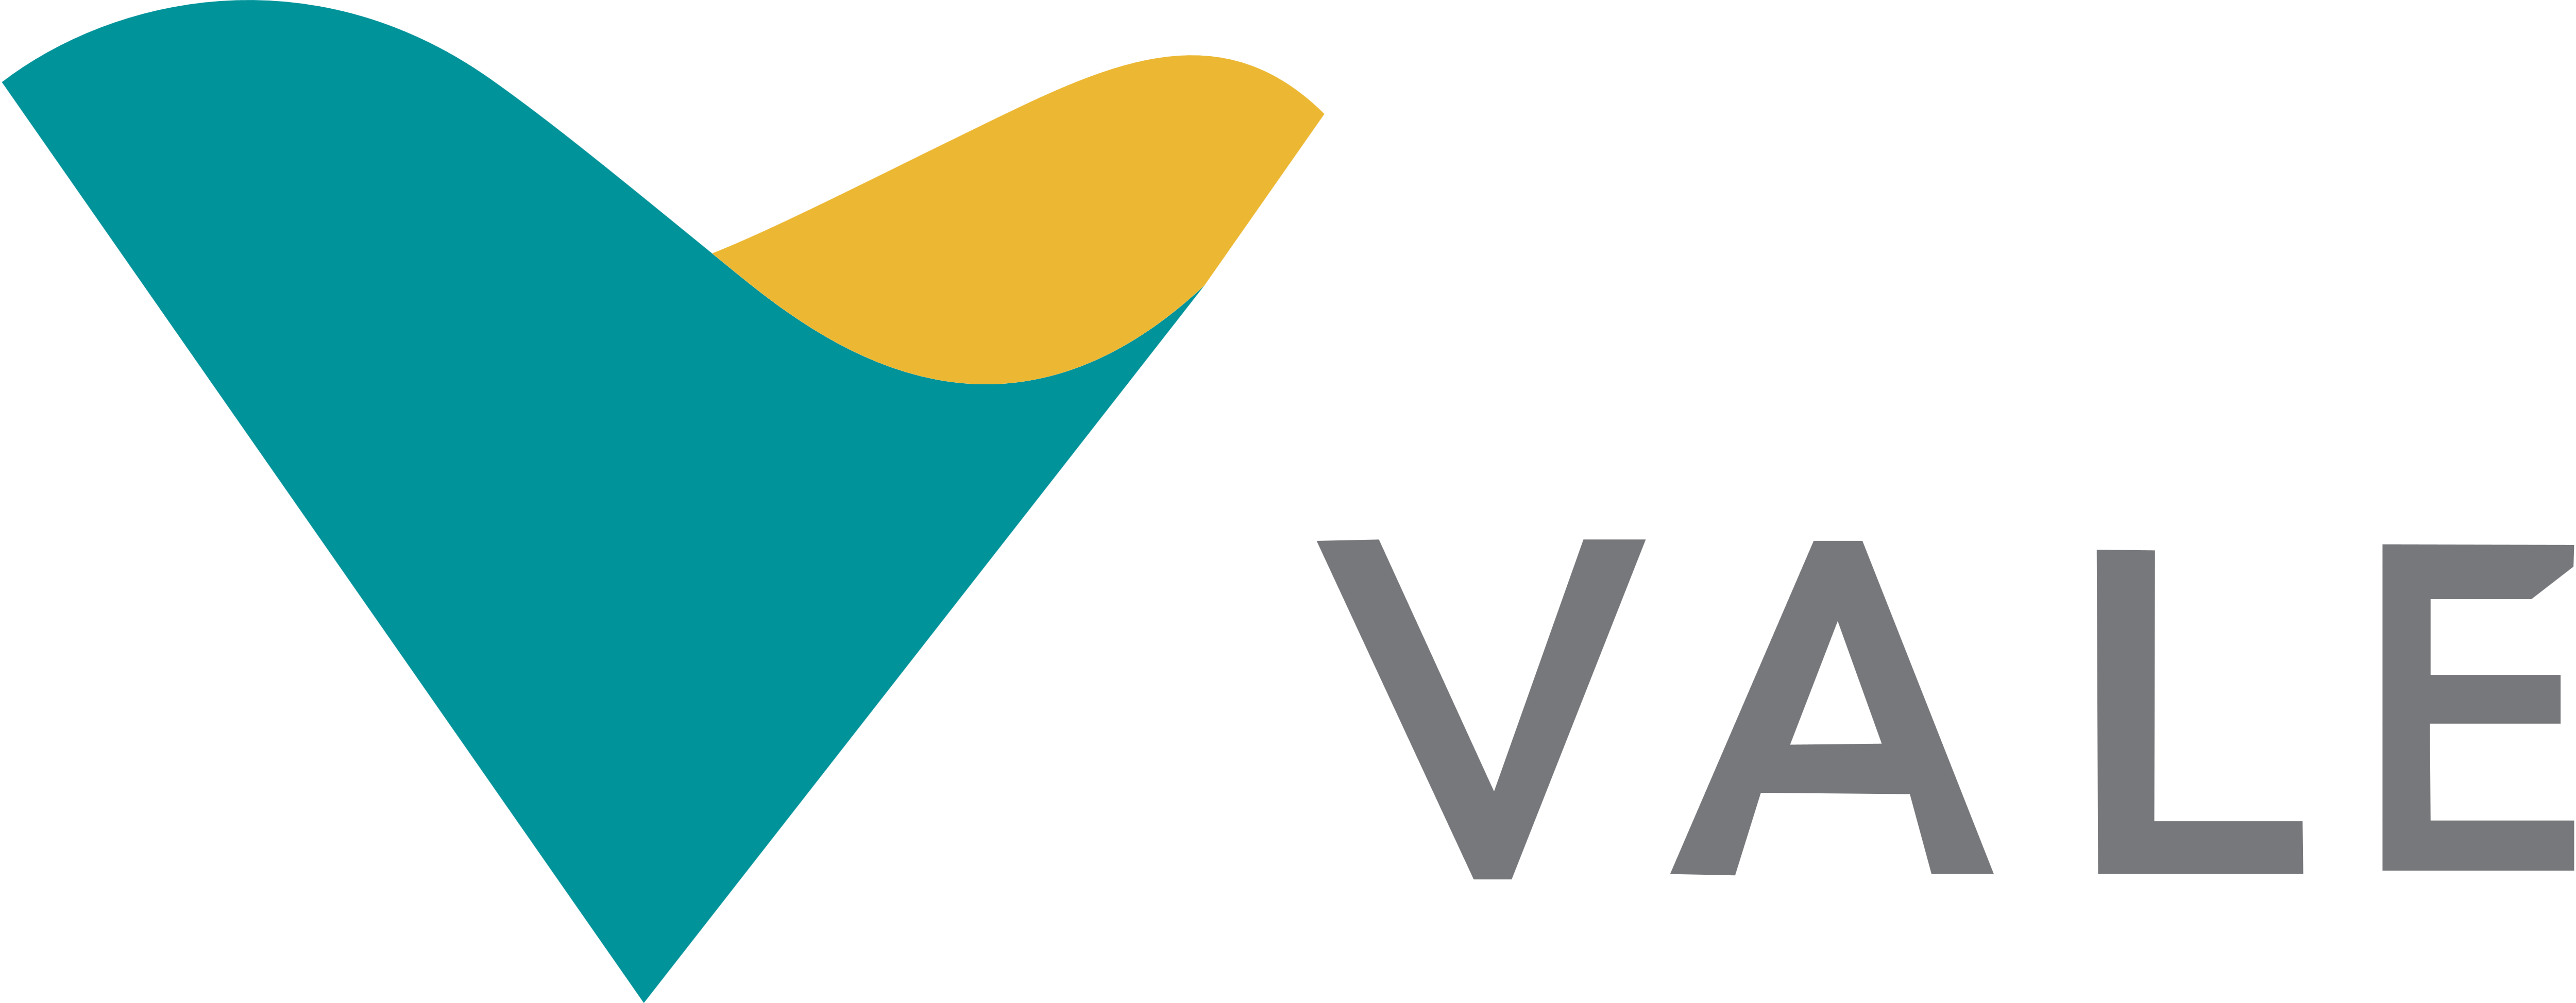 Vale Logo - Vale-logo - Orange Fab